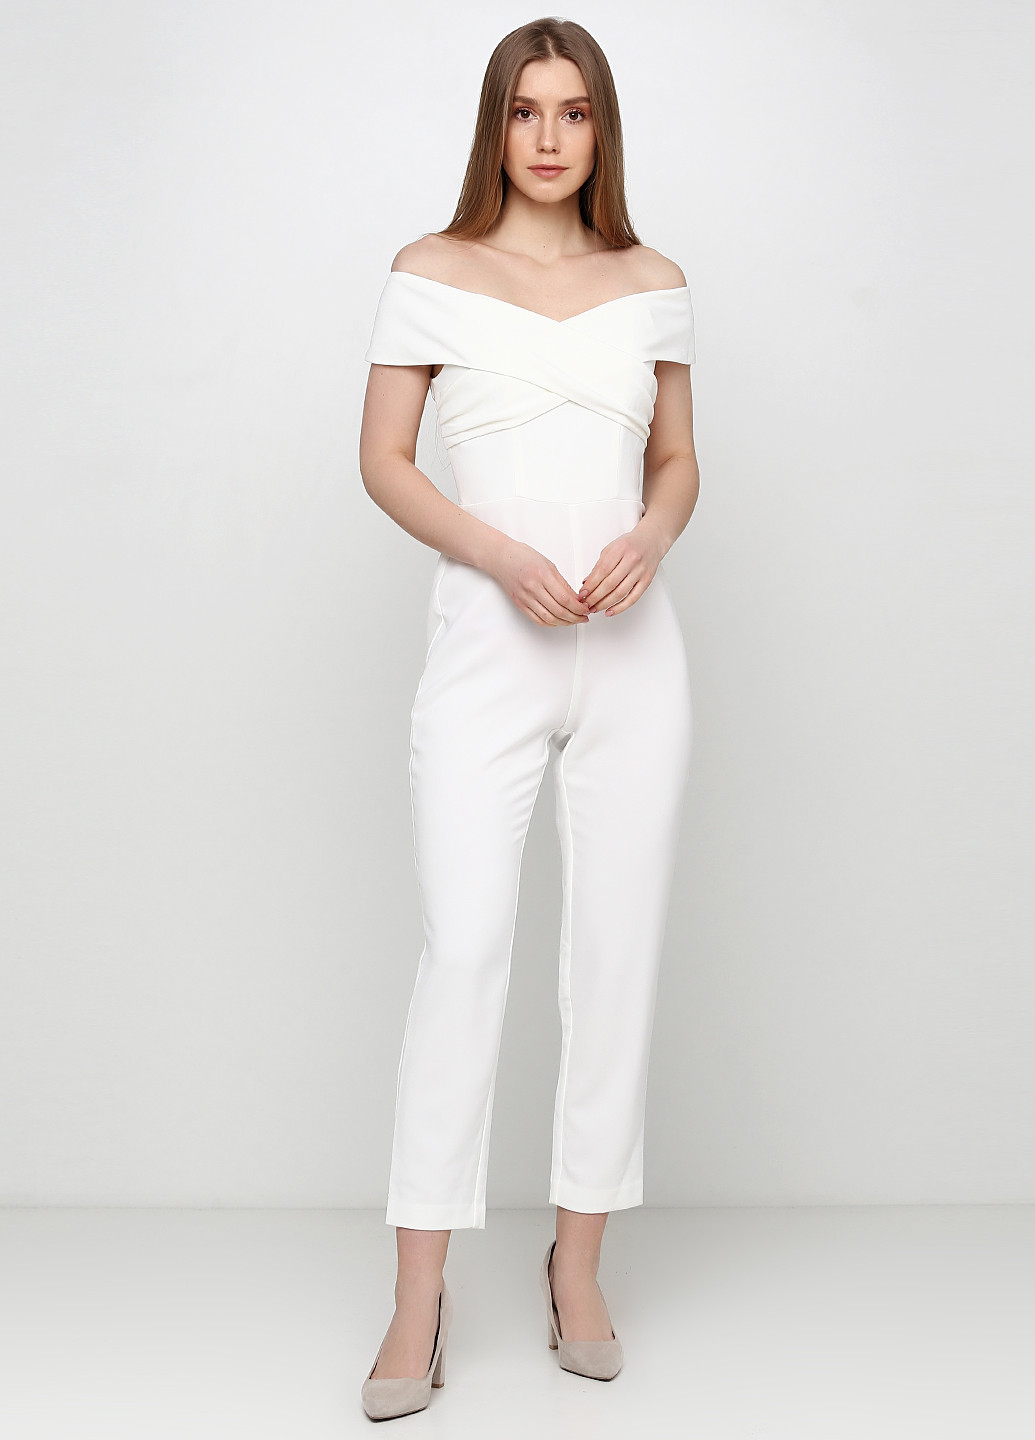 Комбинезон H&M комбинезон-брюки однотонный белый деловой полиэстер